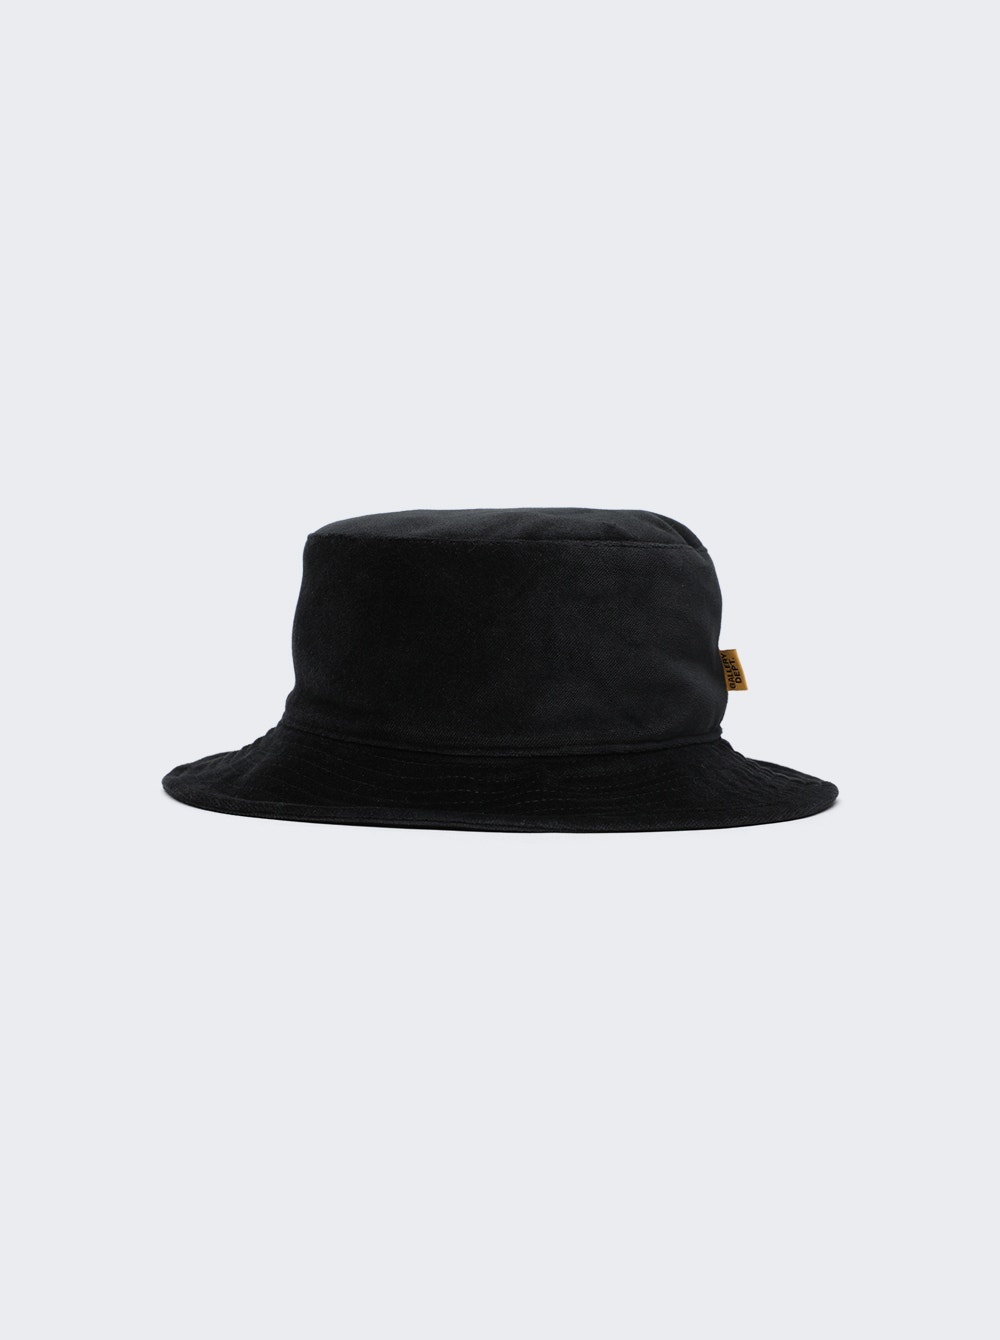 Rodman Velvet Bucket Hat Black - 1